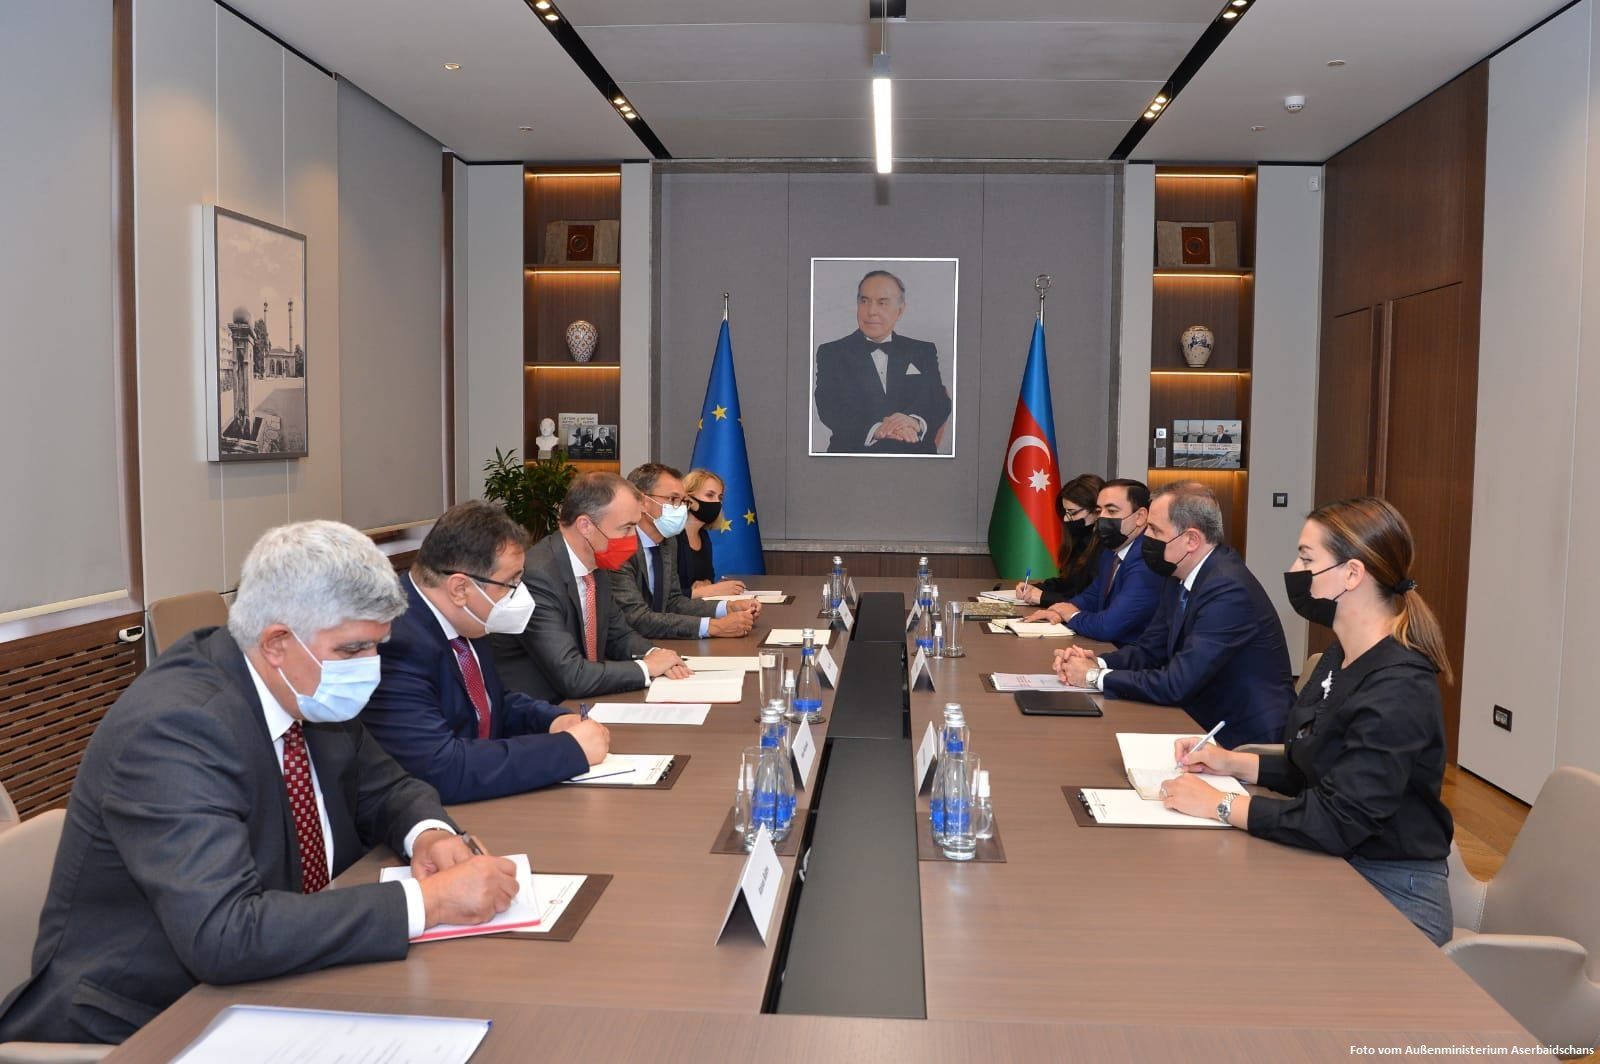 Der aserbaidschanische Außenminister Jeyhun Bayramov hat mit dem EU-Sonderbeauftragten für den Südkaukasus Toivo Klaar über die Lage in der Region gesprochen